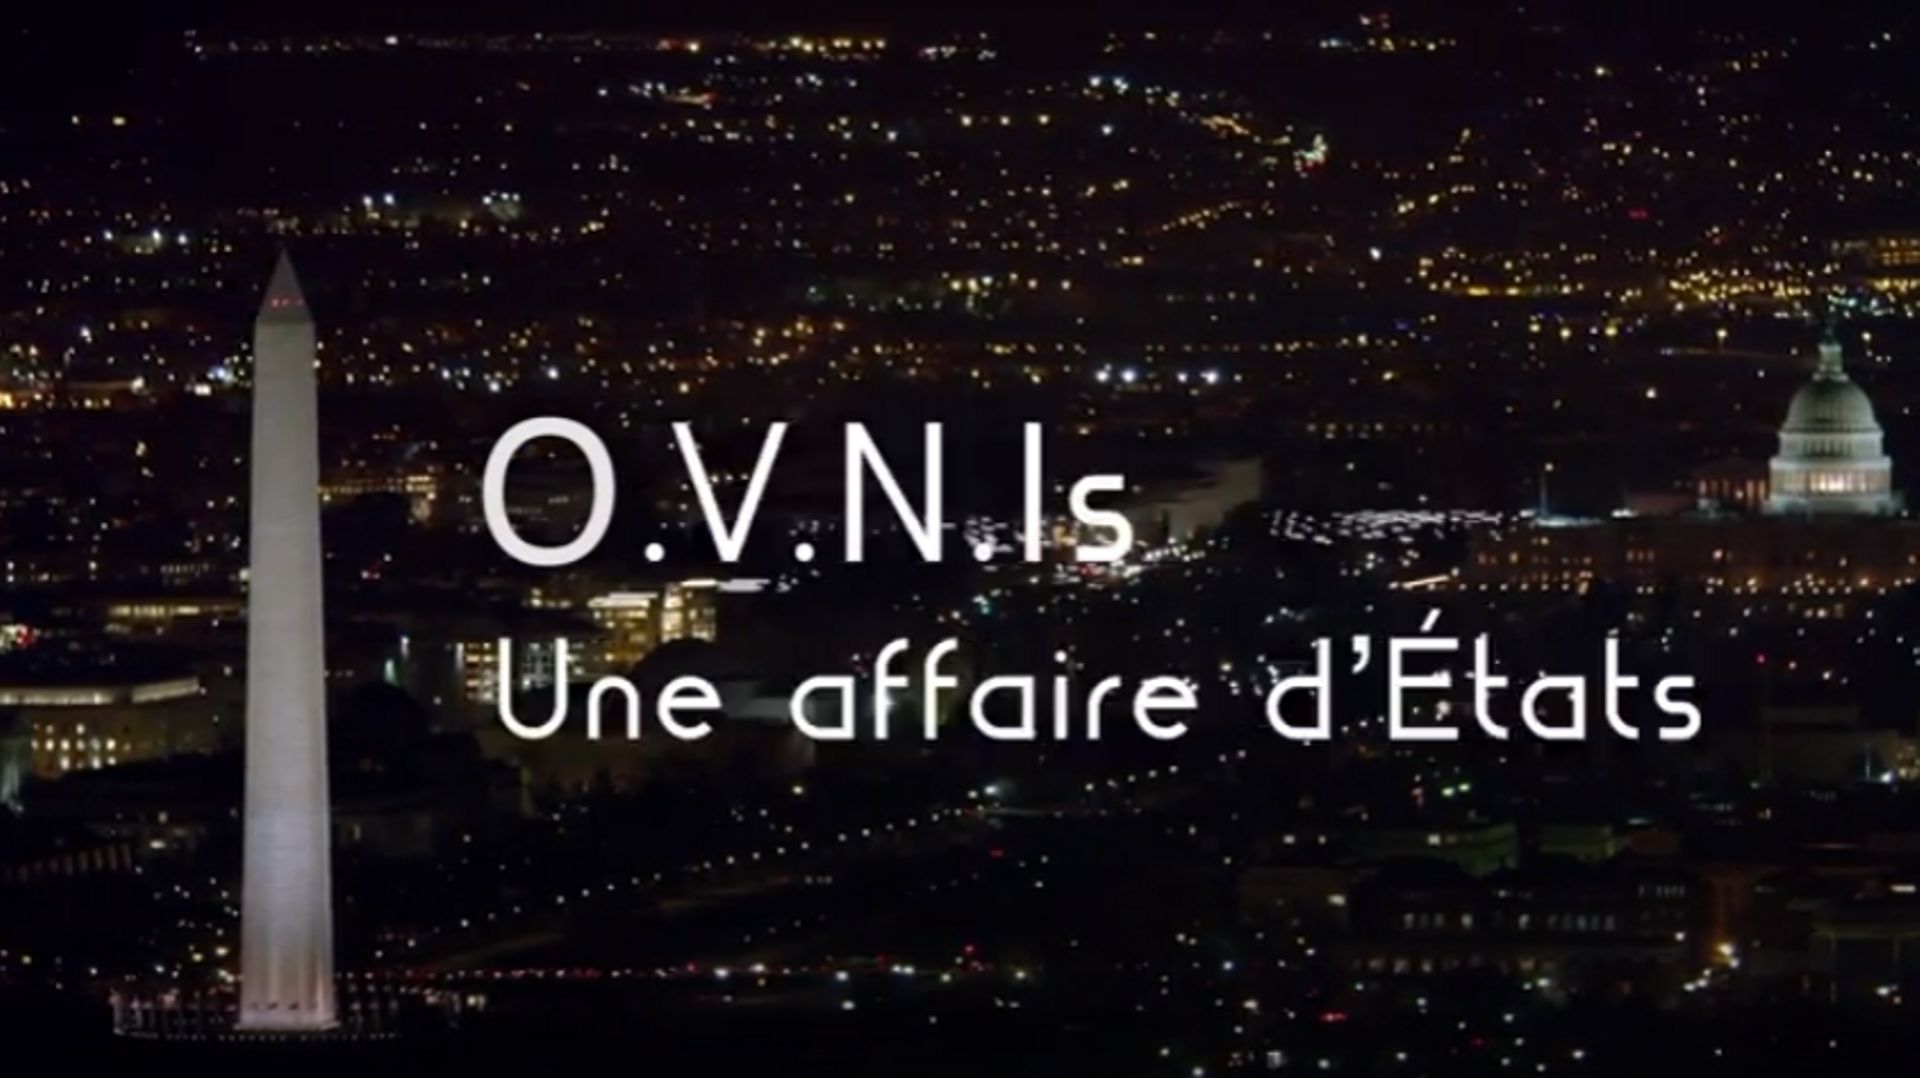 Ovnis - une affaire d'état, un film de Dominique Filhol, à voir sur La Une ce jeudi 18 juin